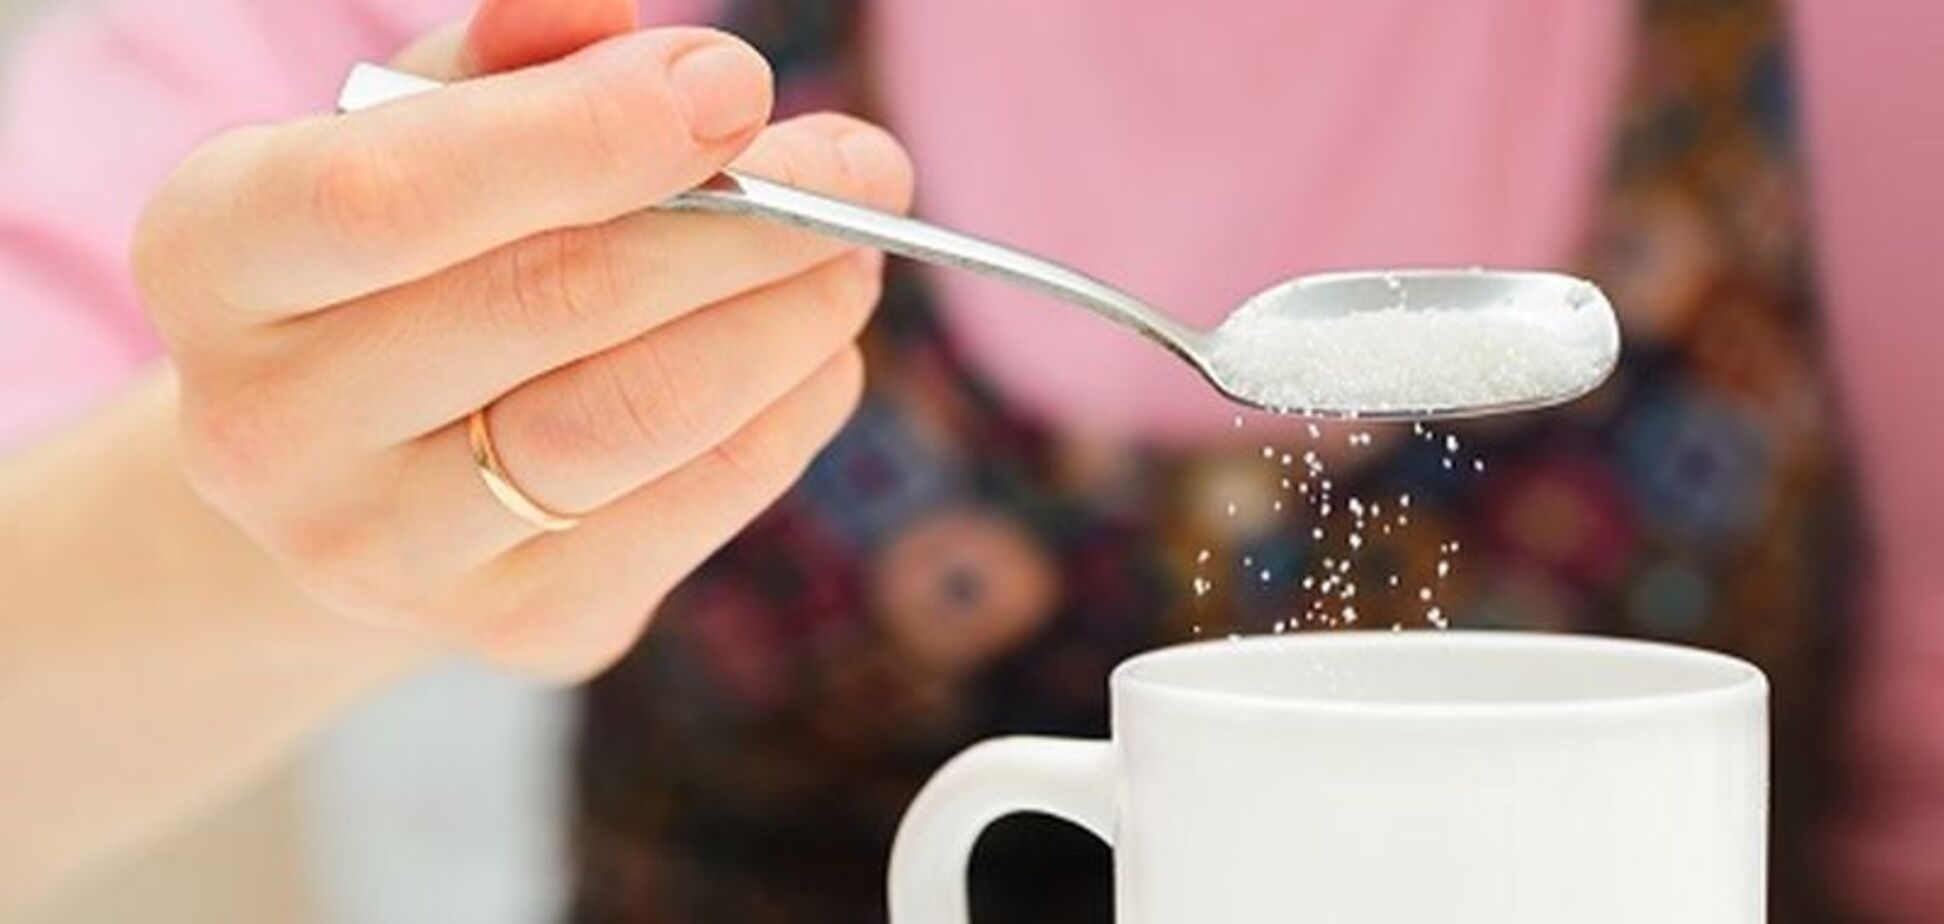 Судини, як у 65-річних: учені показали руйнівну дію цукру